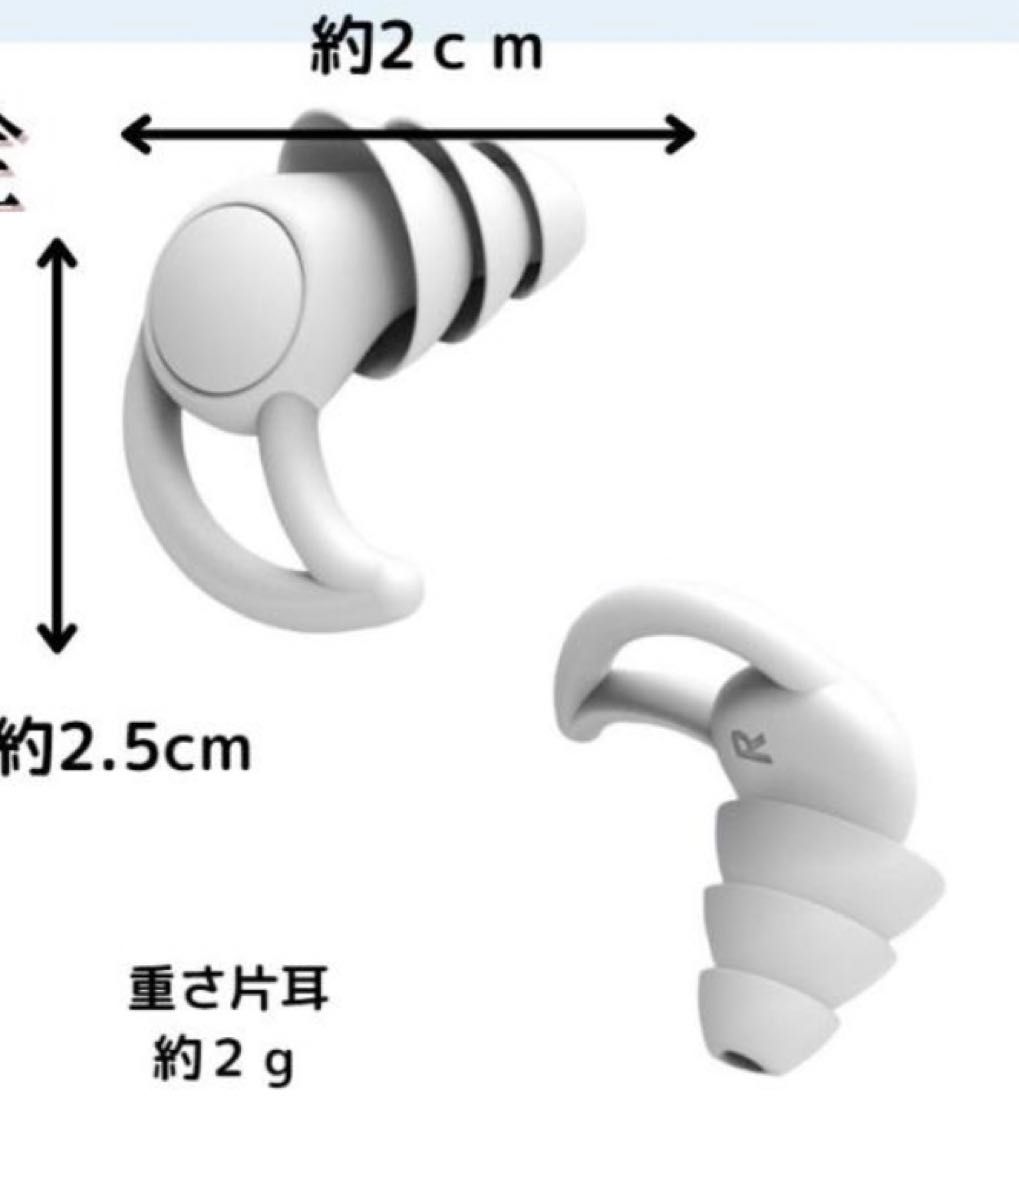 白 遮音 防音 フィット感 シリコン製 いびき対策 快眠安眠 耳栓 聴覚保護 ケース付き